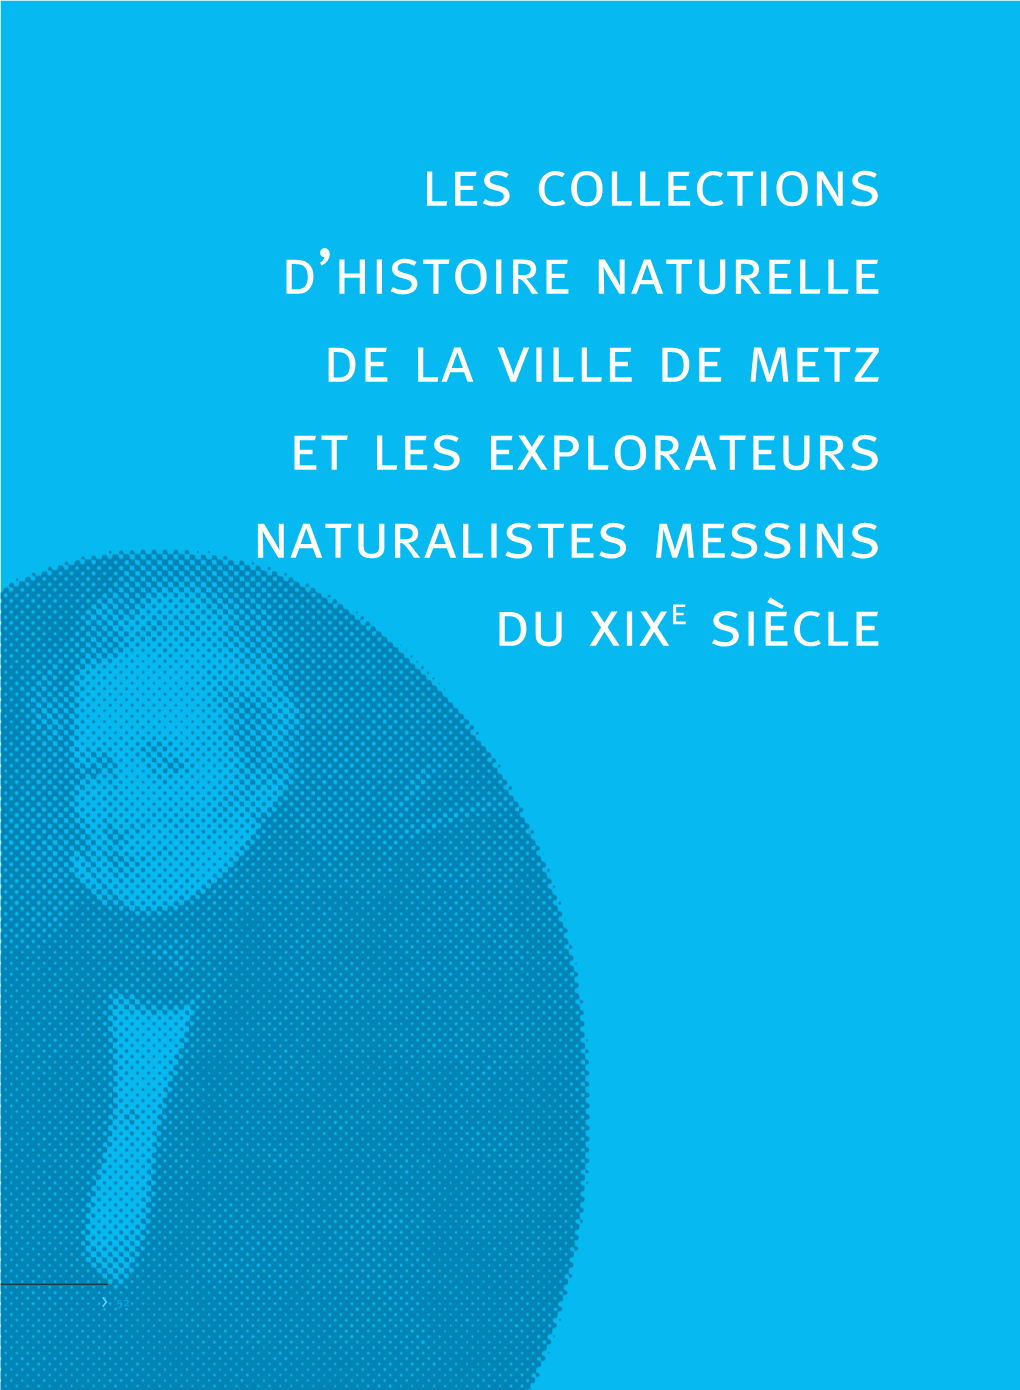 Les Collections D'histoire Naturelle De La Ville De Metz Et Les Explorateurs